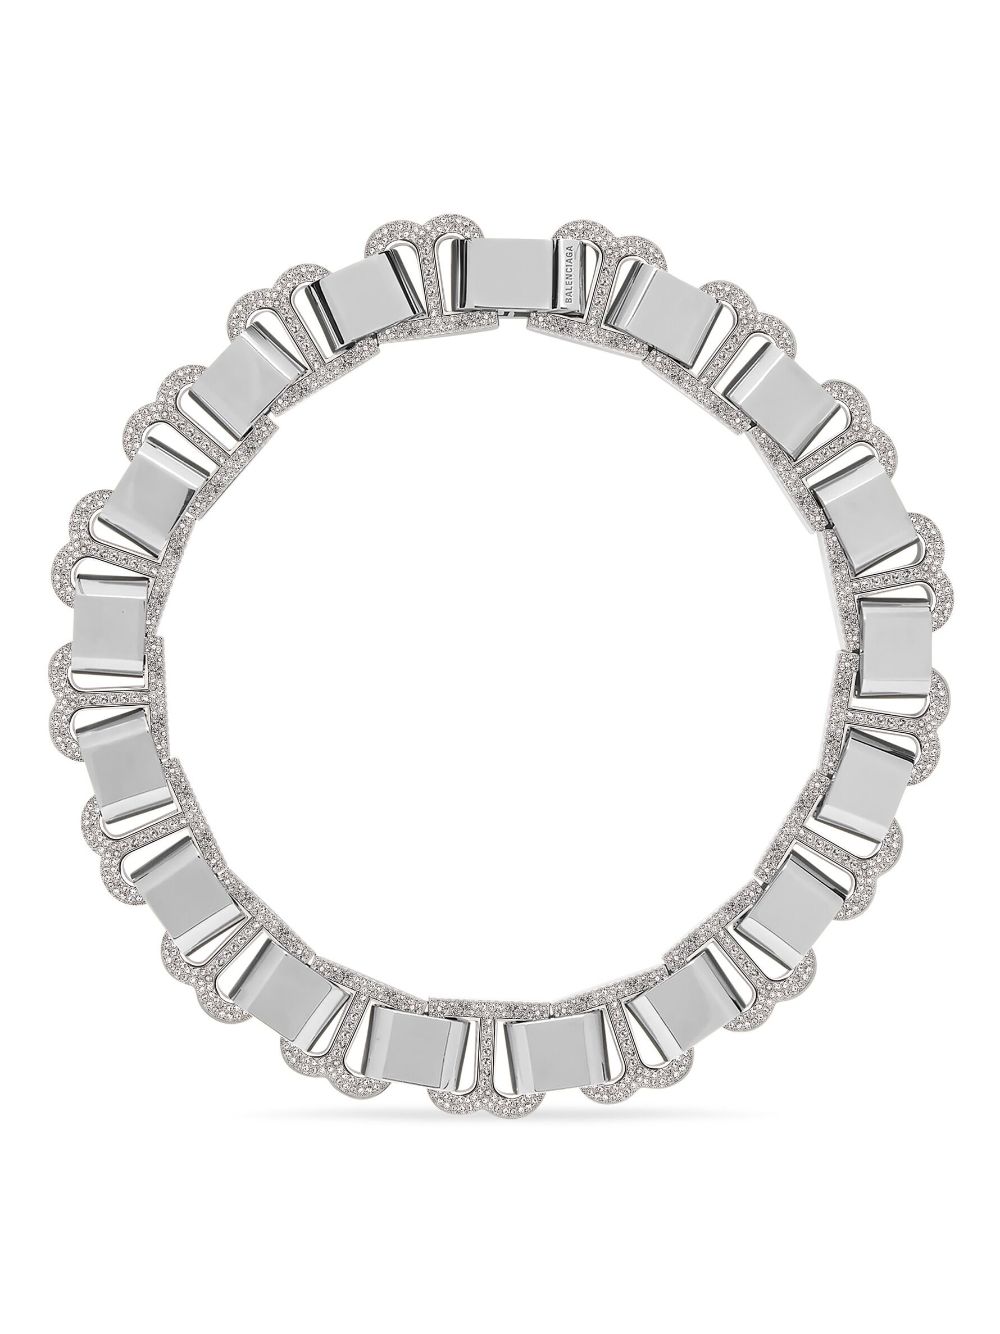 Balenciaga Hourglass necklace choker - Silver von Balenciaga